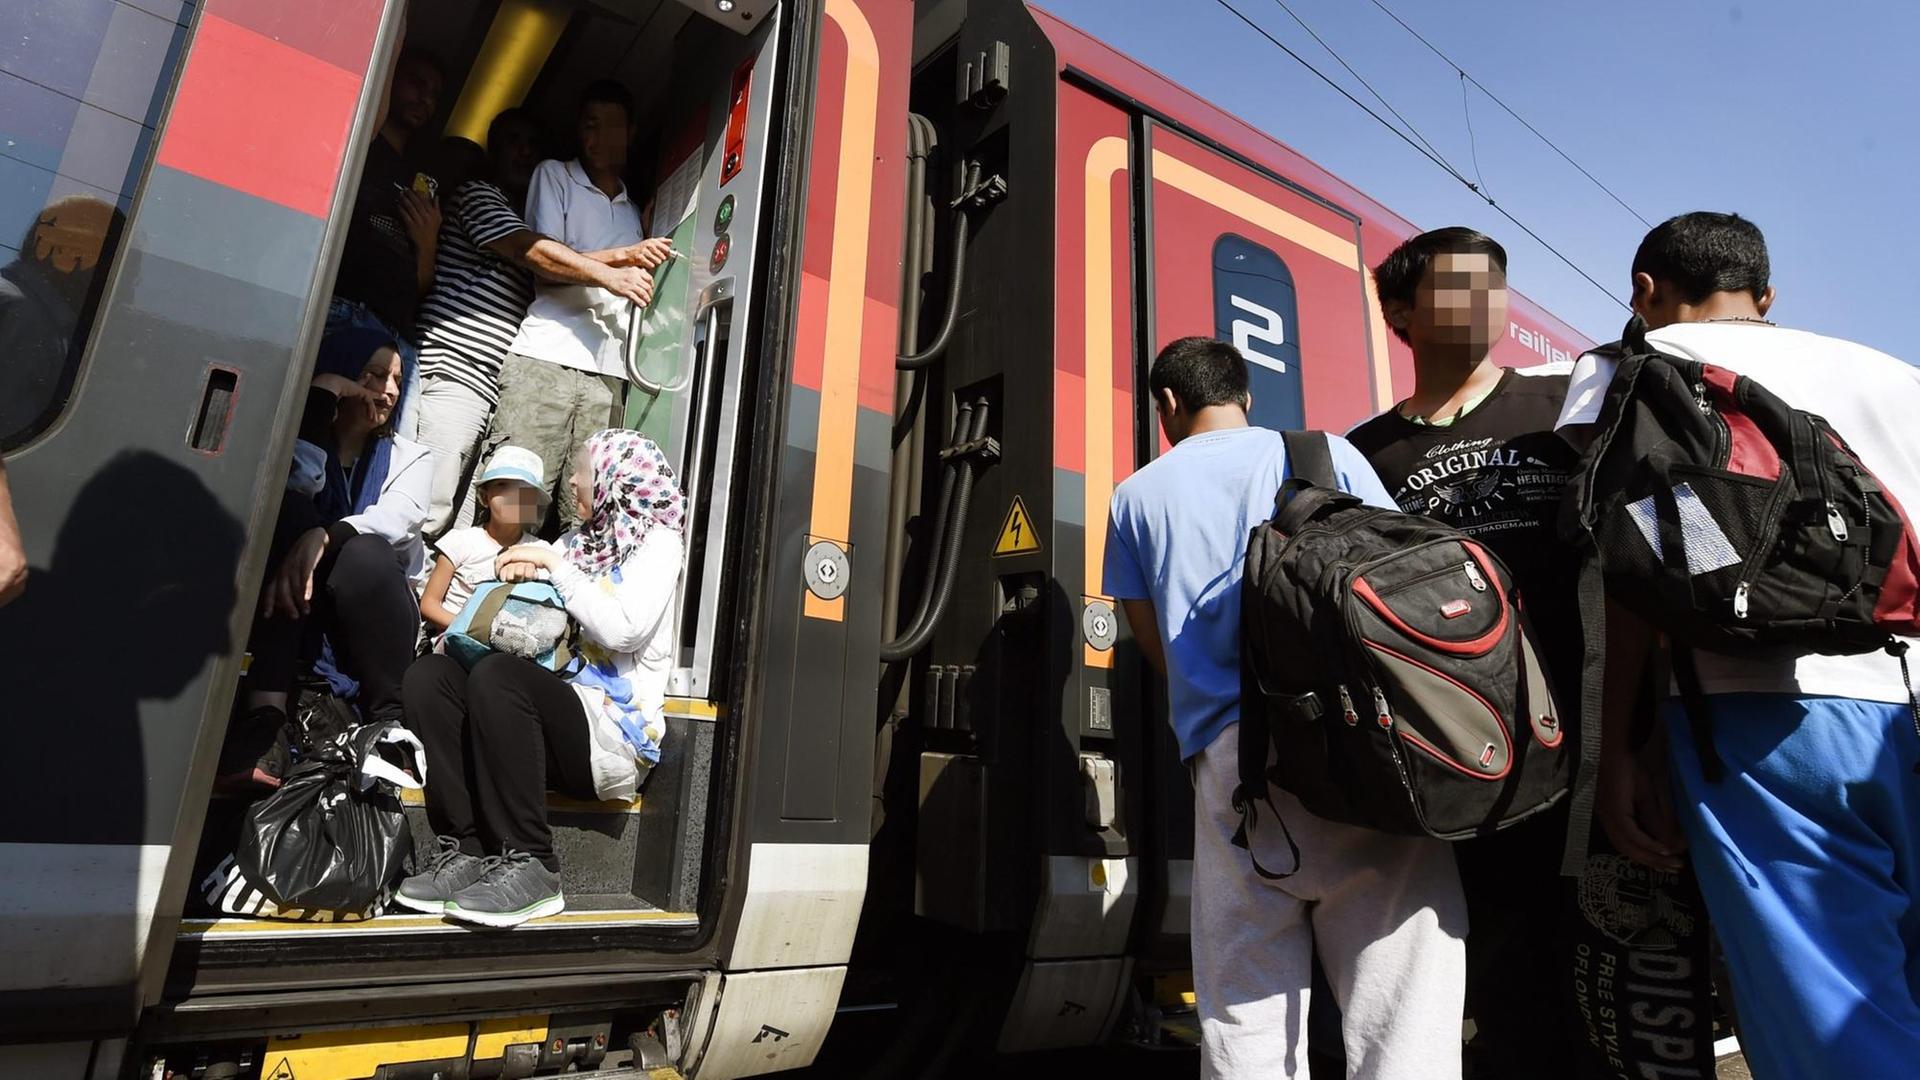 Flüchtlinge versuchen in den Zug nach Wien zu gelangen, in den Eingängen sitzen Menschen.